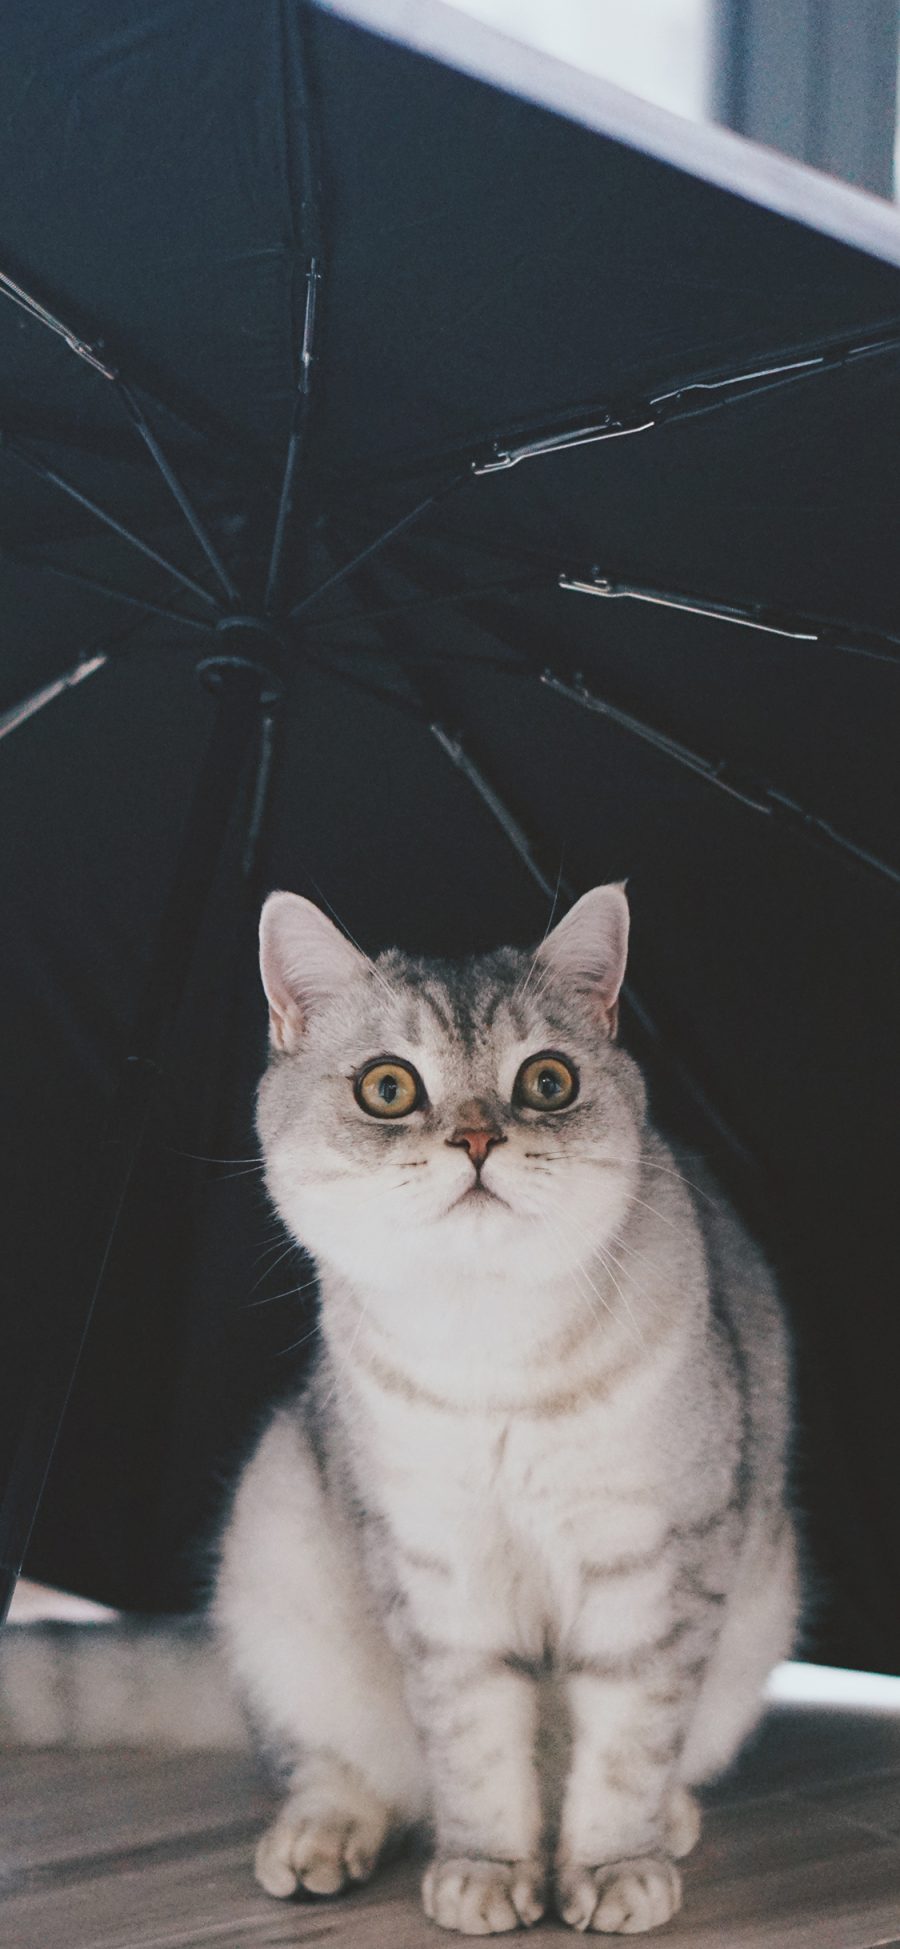 [2436×1125]猫咪 伞 宠物 呆萌 苹果手机壁纸图片